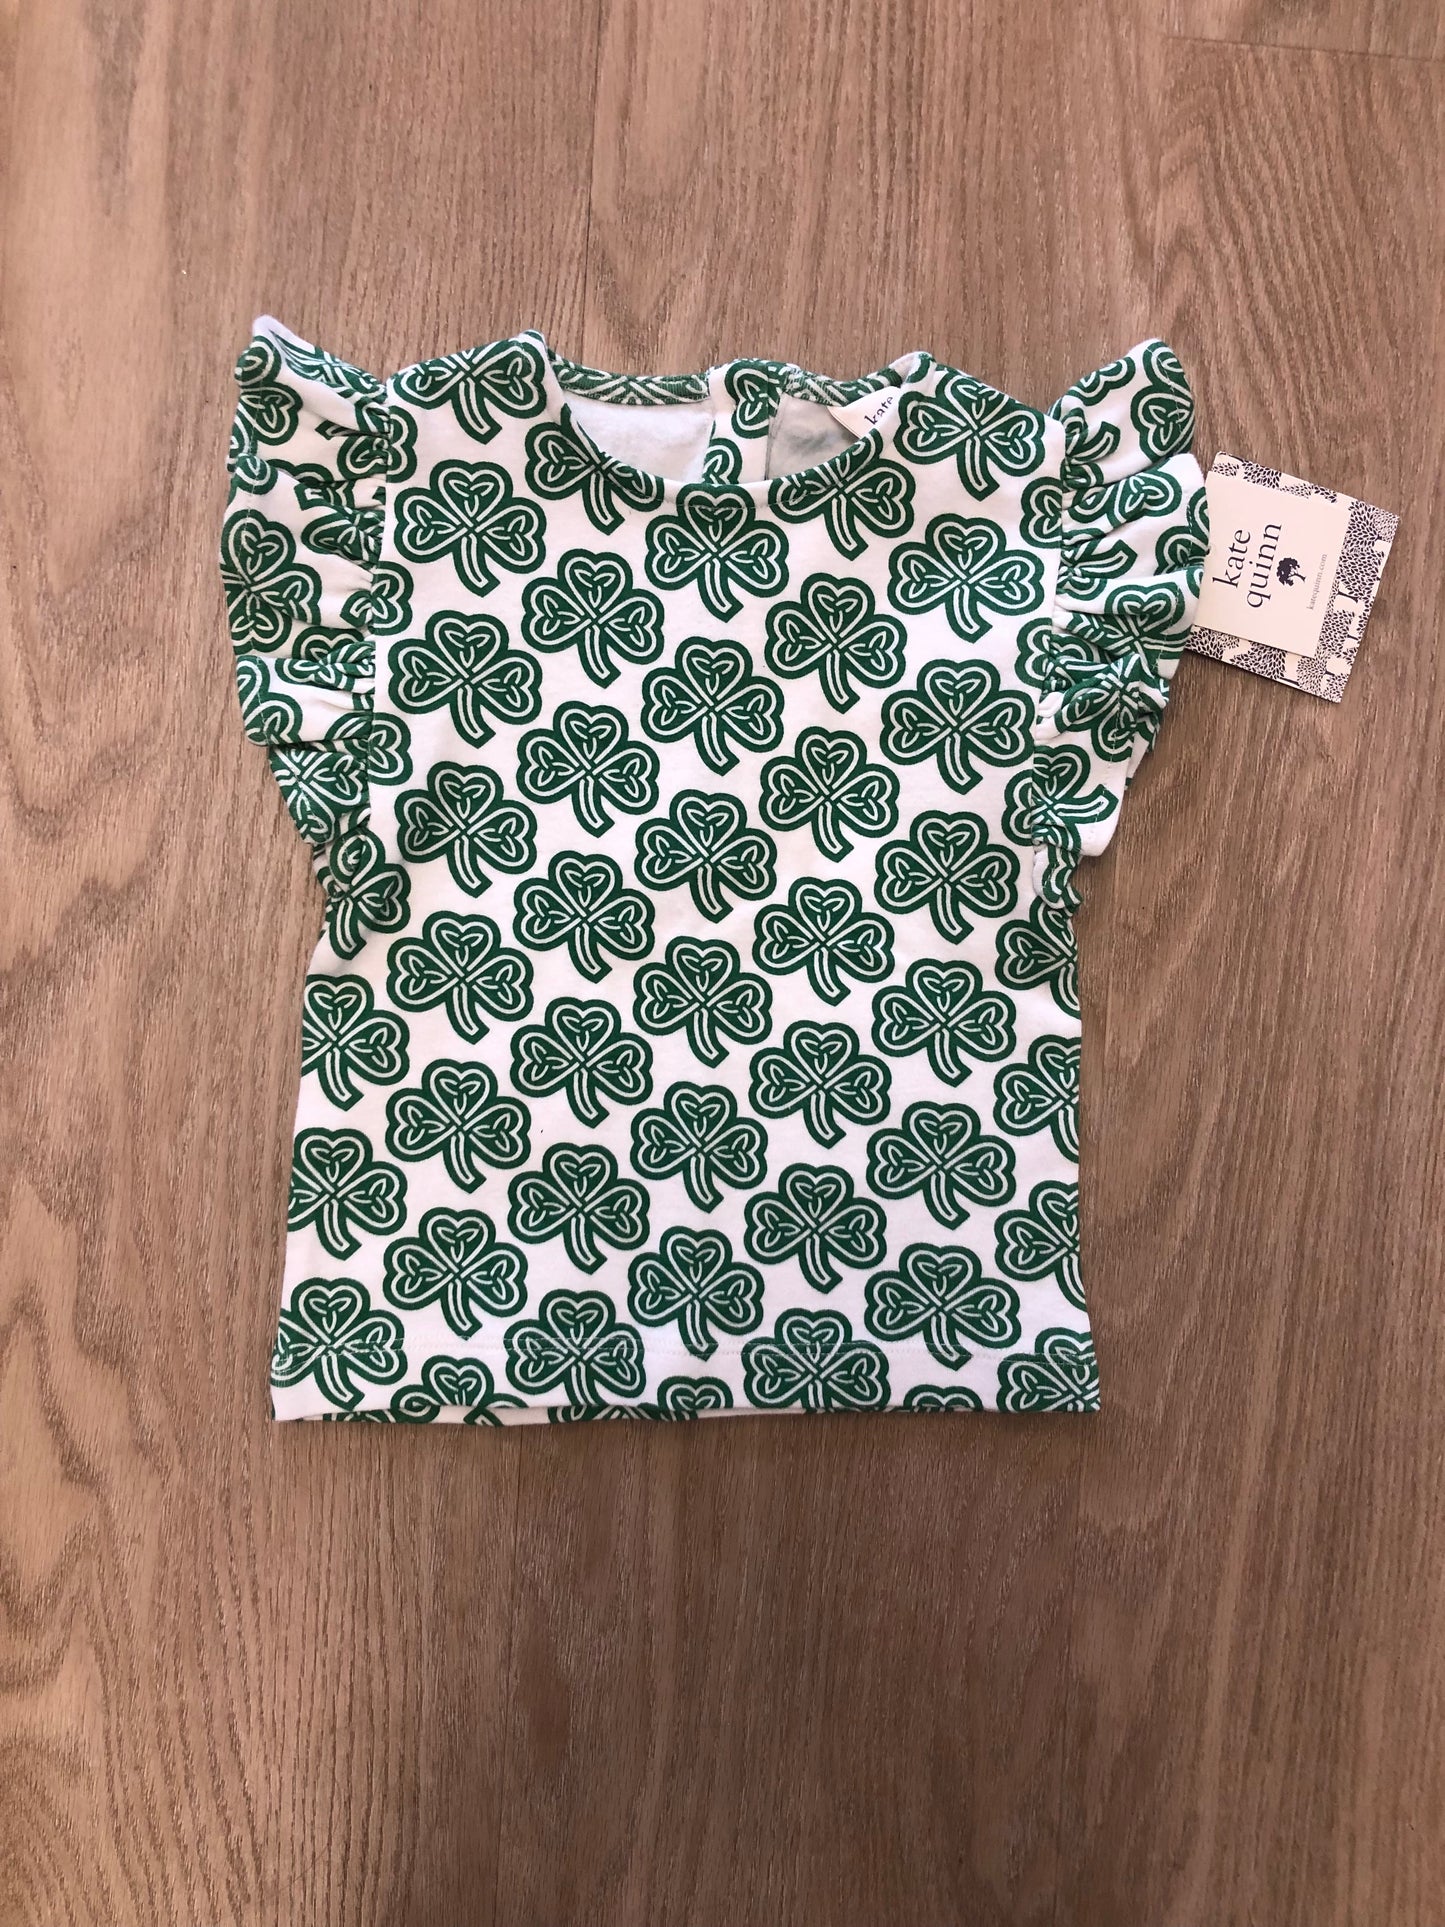 Kate Quinn Child Size 12 Months Green Print Shirt